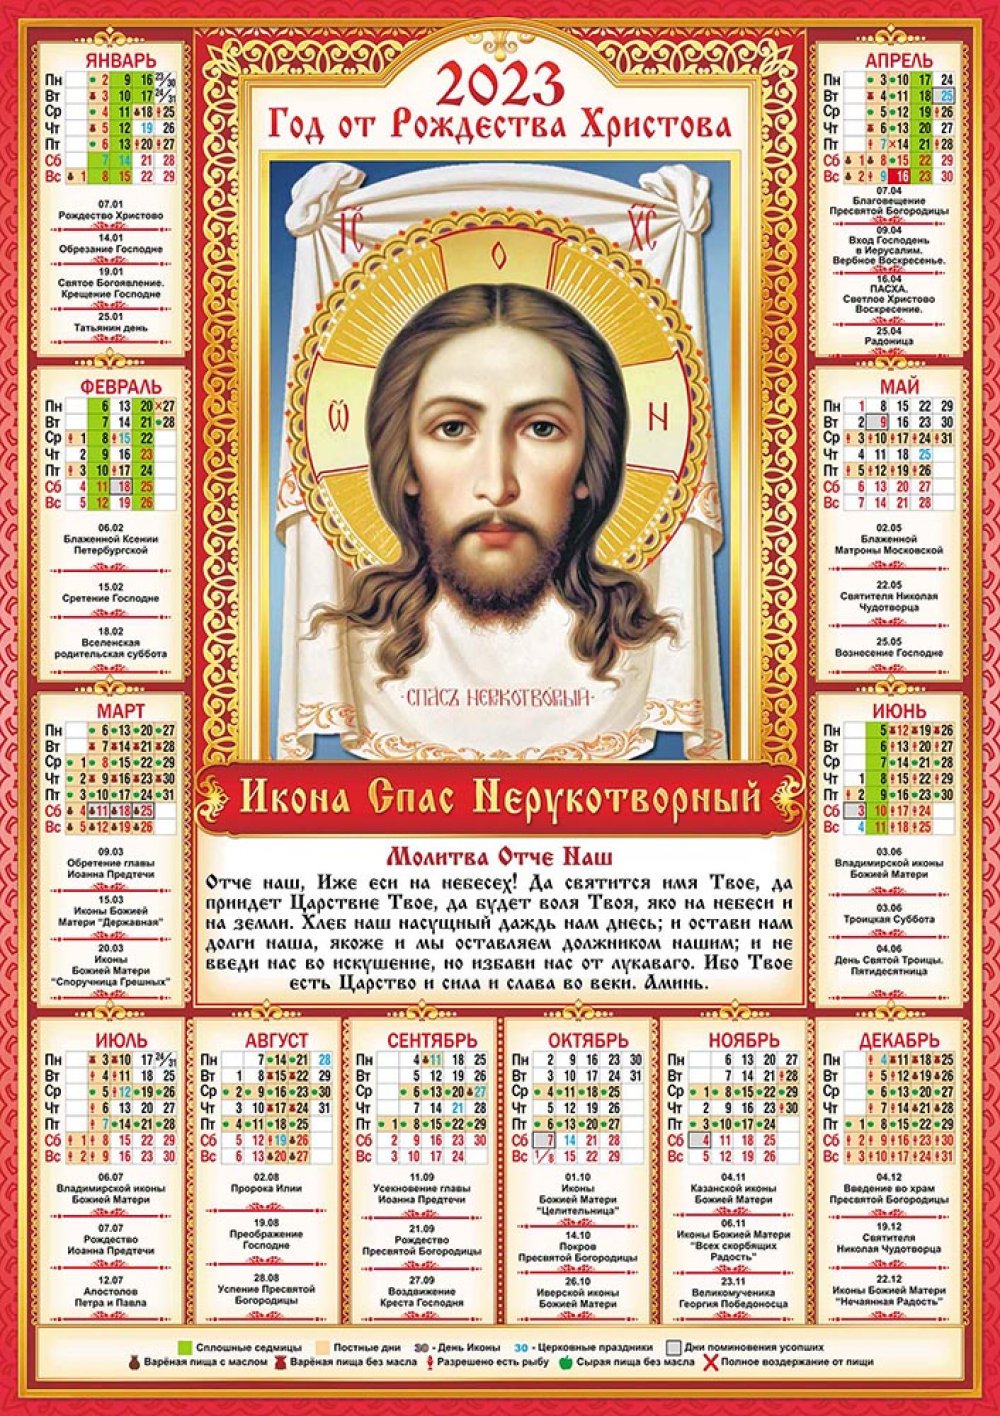 Православный календарь 2023 с праздниками. Православный календарь. Православный календарь на 2023. Православный календарь на 2023 год с праздниками.